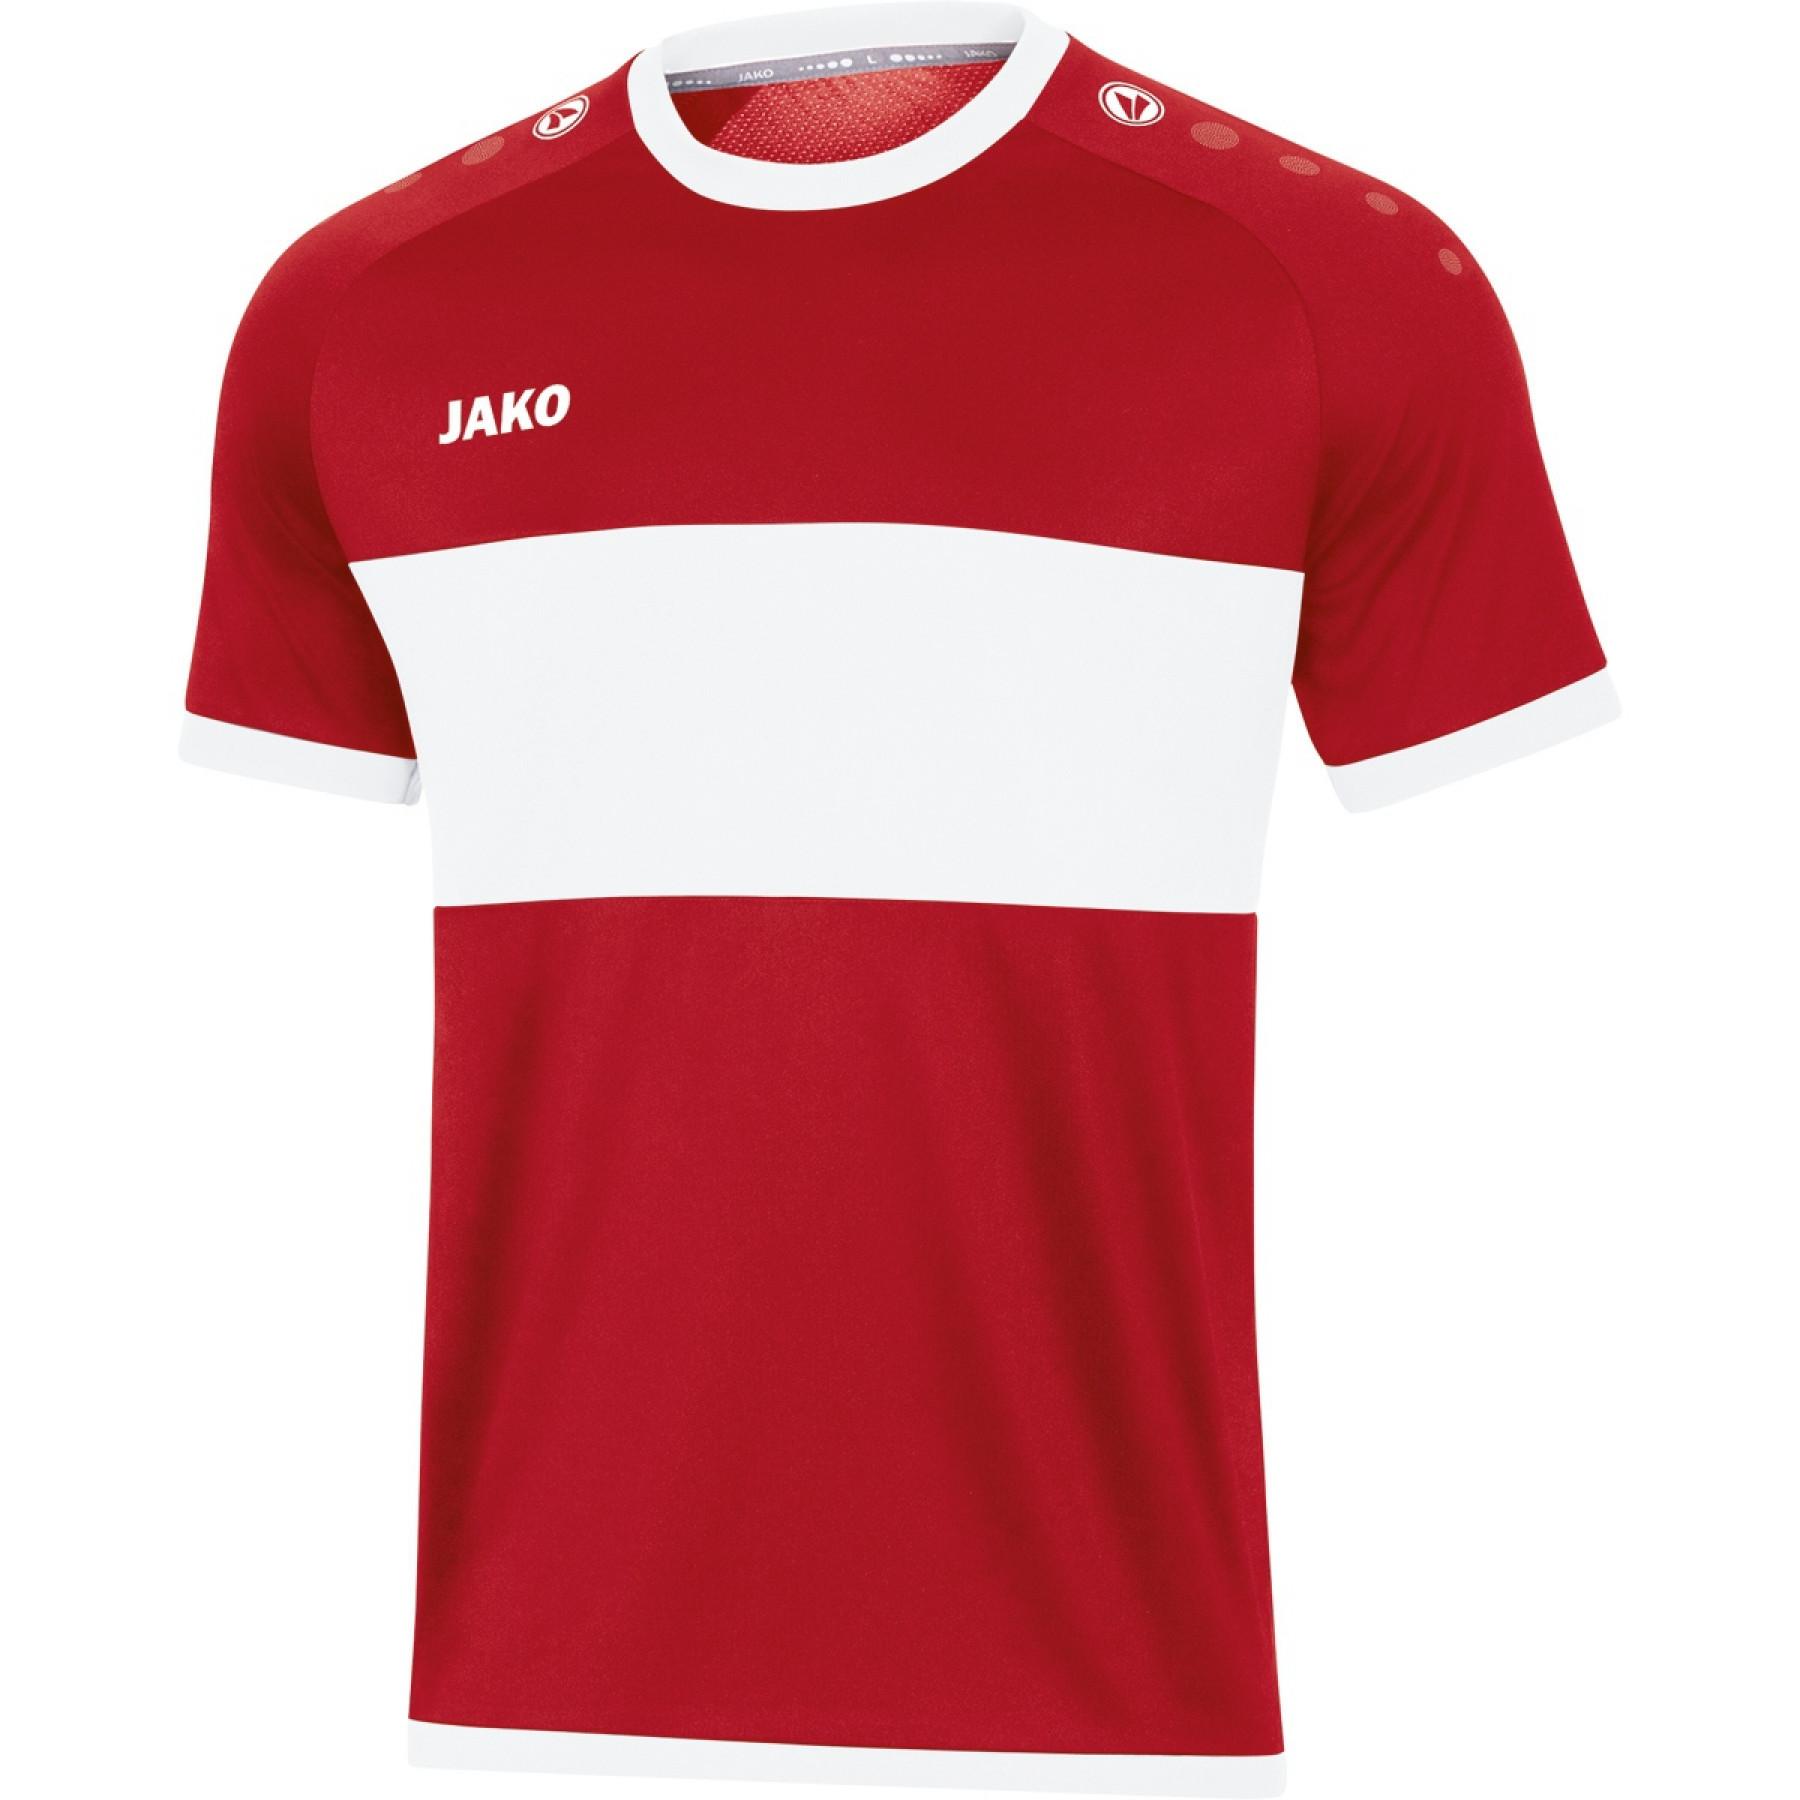 Children's jersey Jako Boca - Jerseys - Men's wear - Handball wear